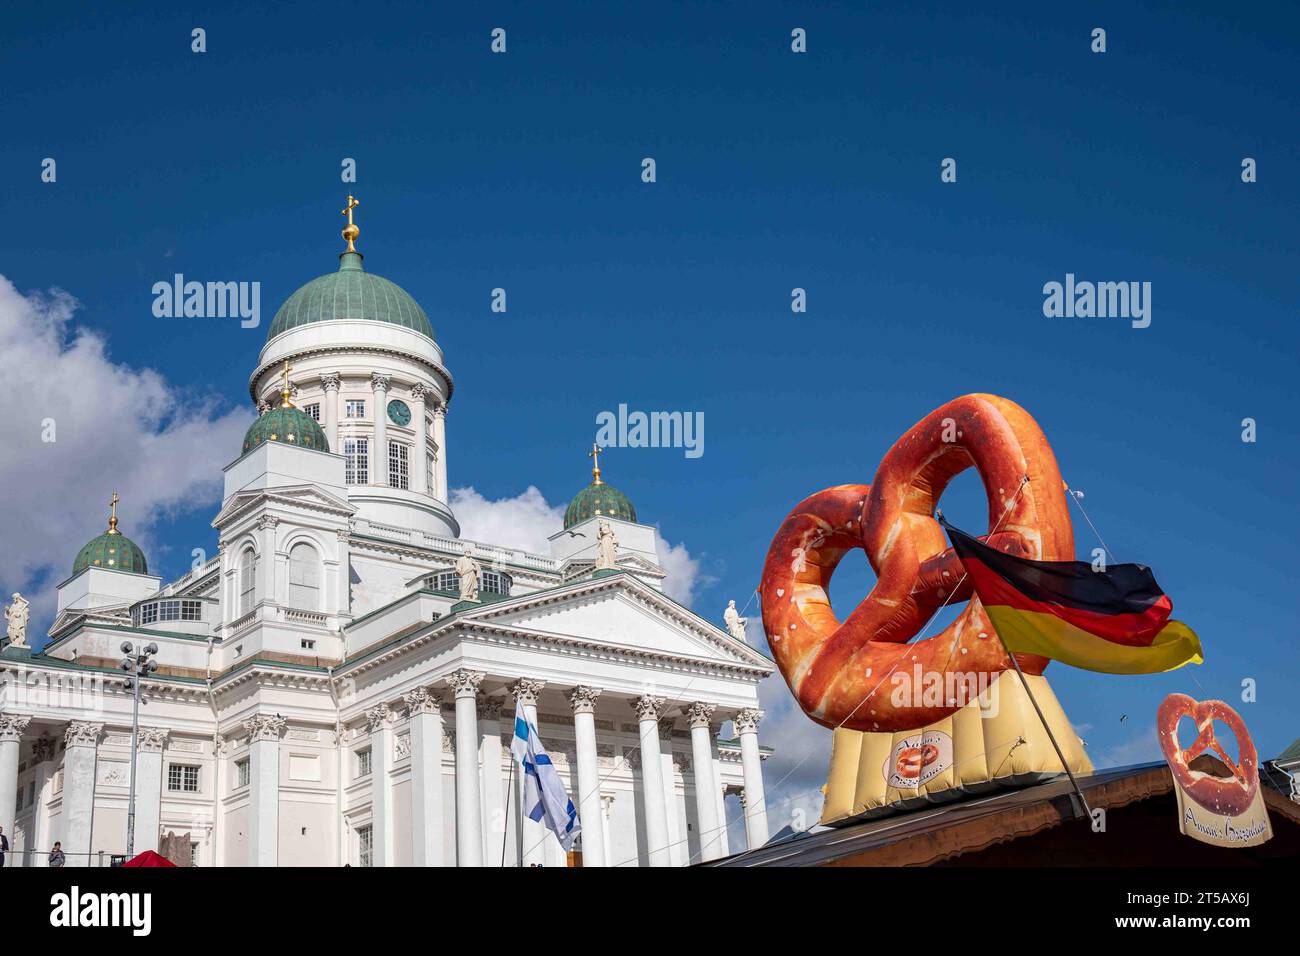 Insegna del pretzel e cattedrale di Helsinki al grande mercato internazionale di Helsinki, Finlandia Foto Stock